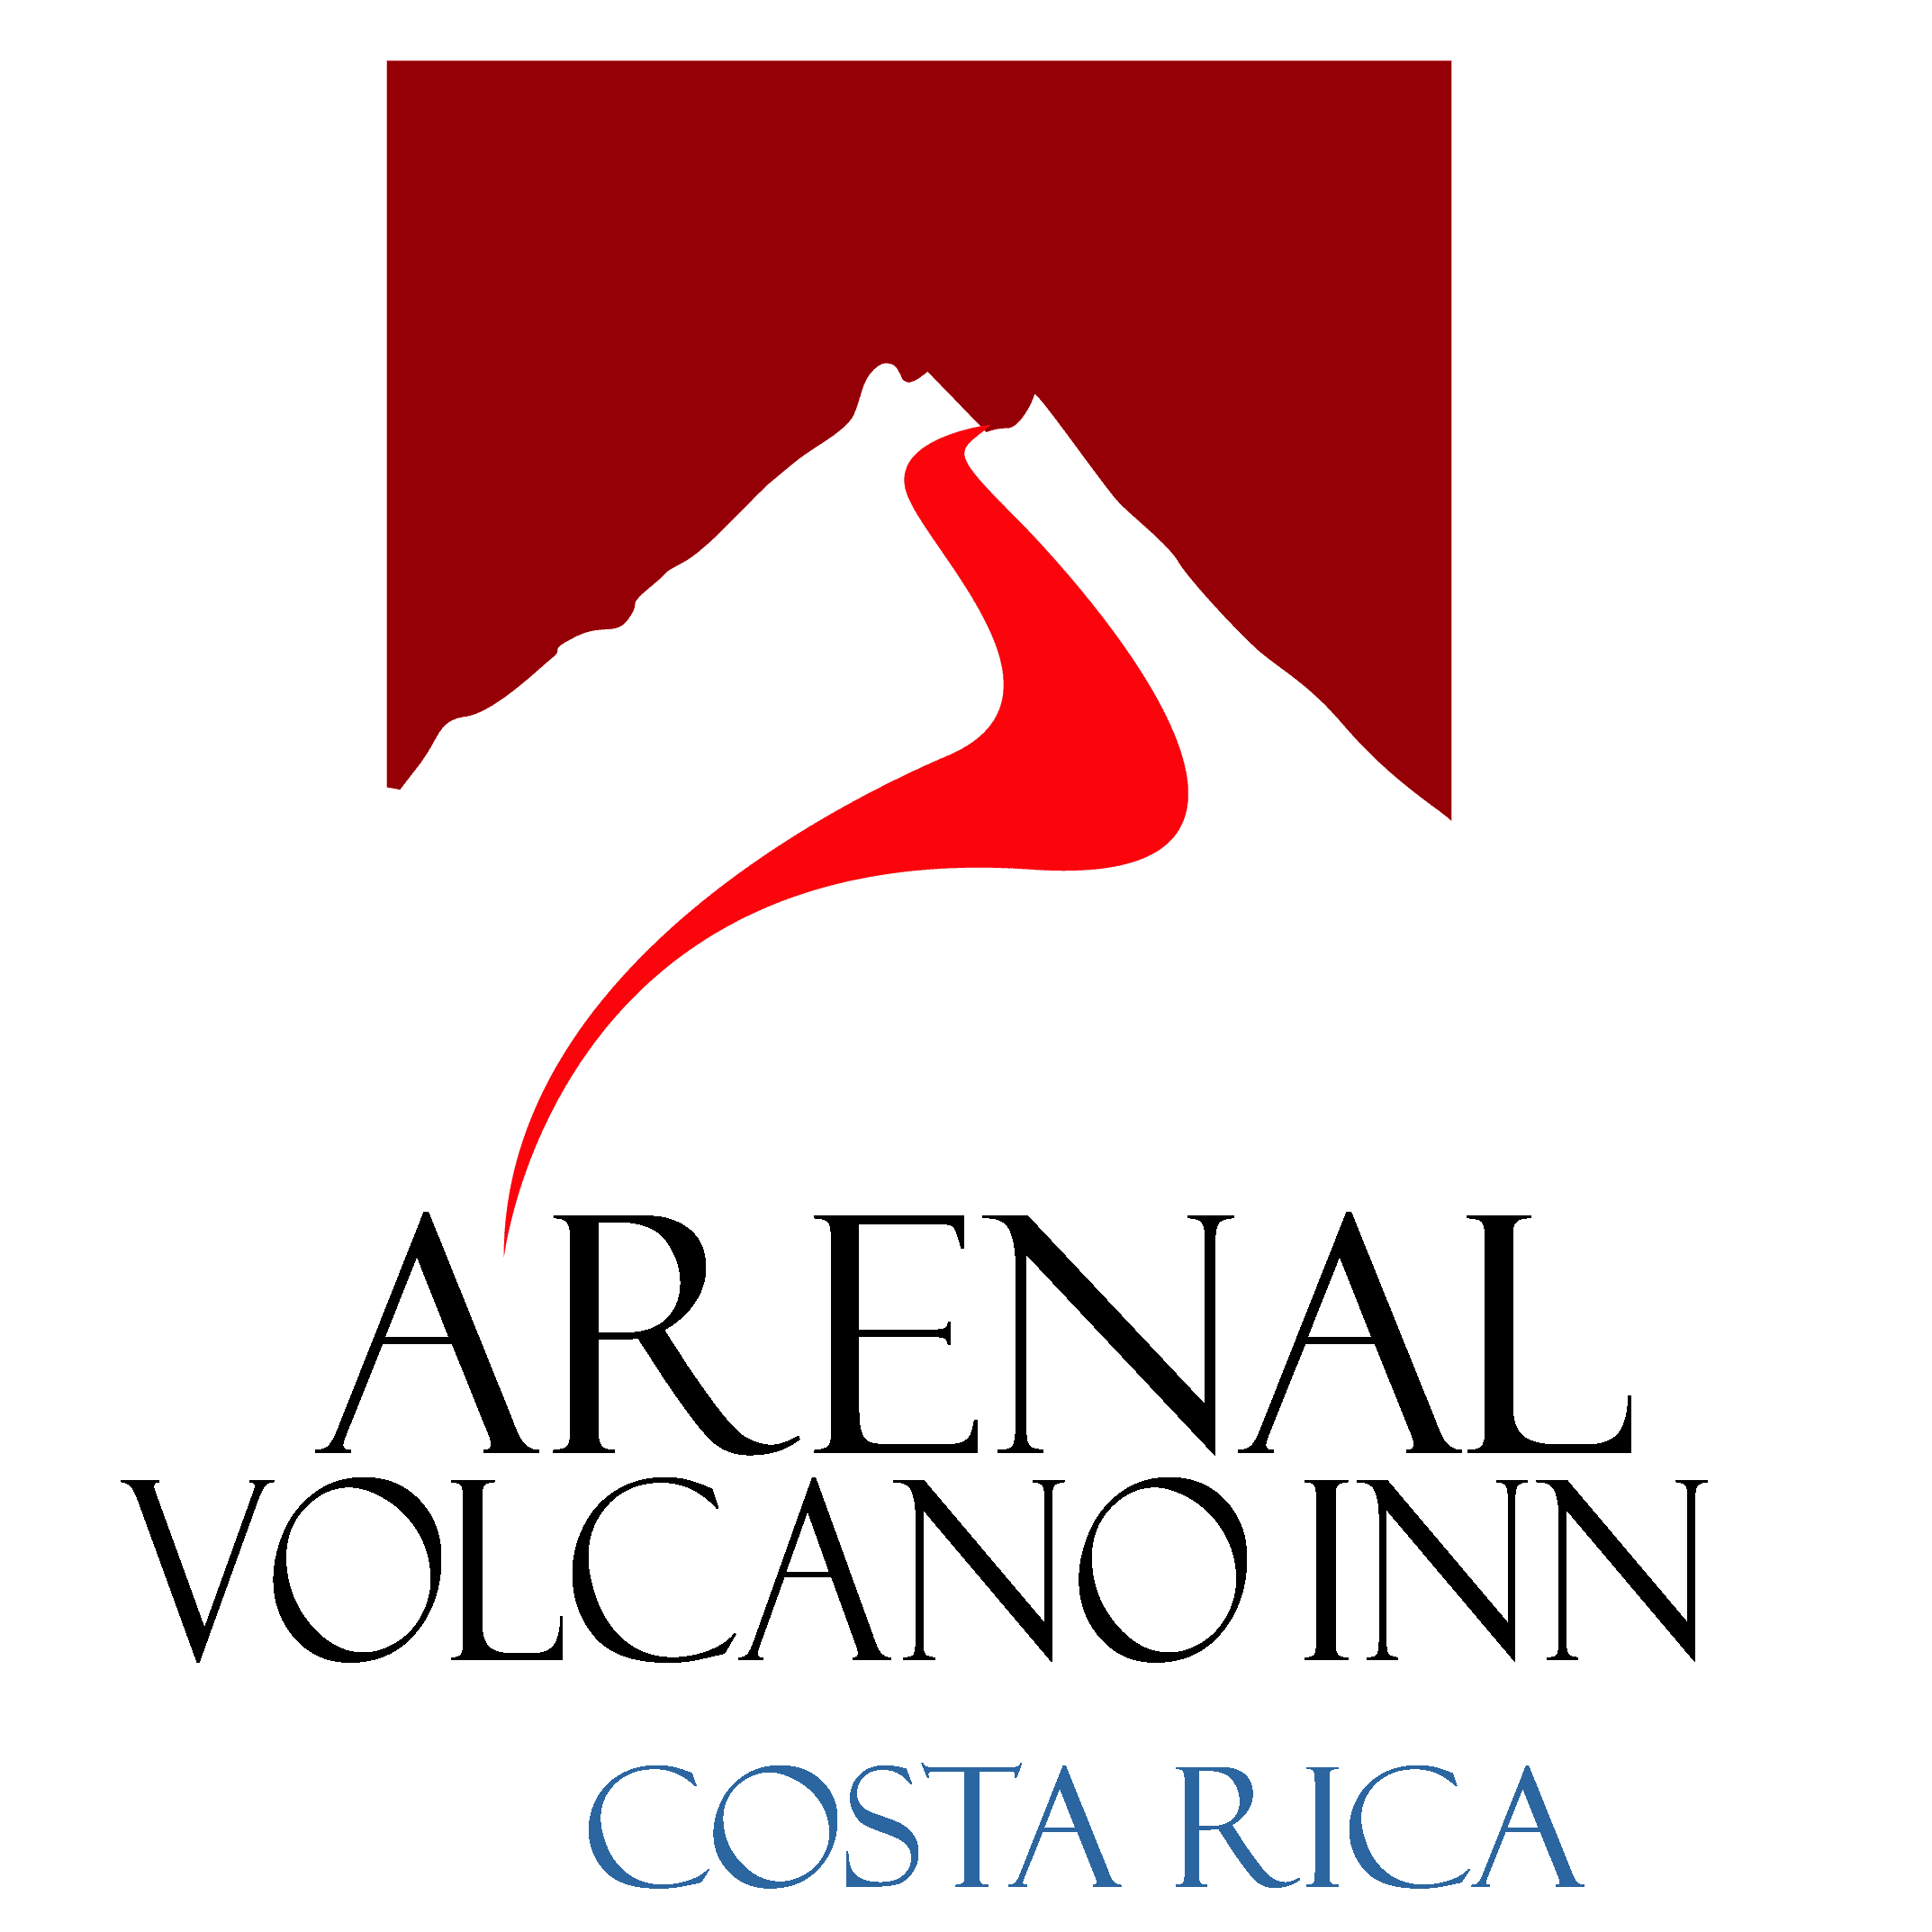 Arenal Volcano Inn Logo